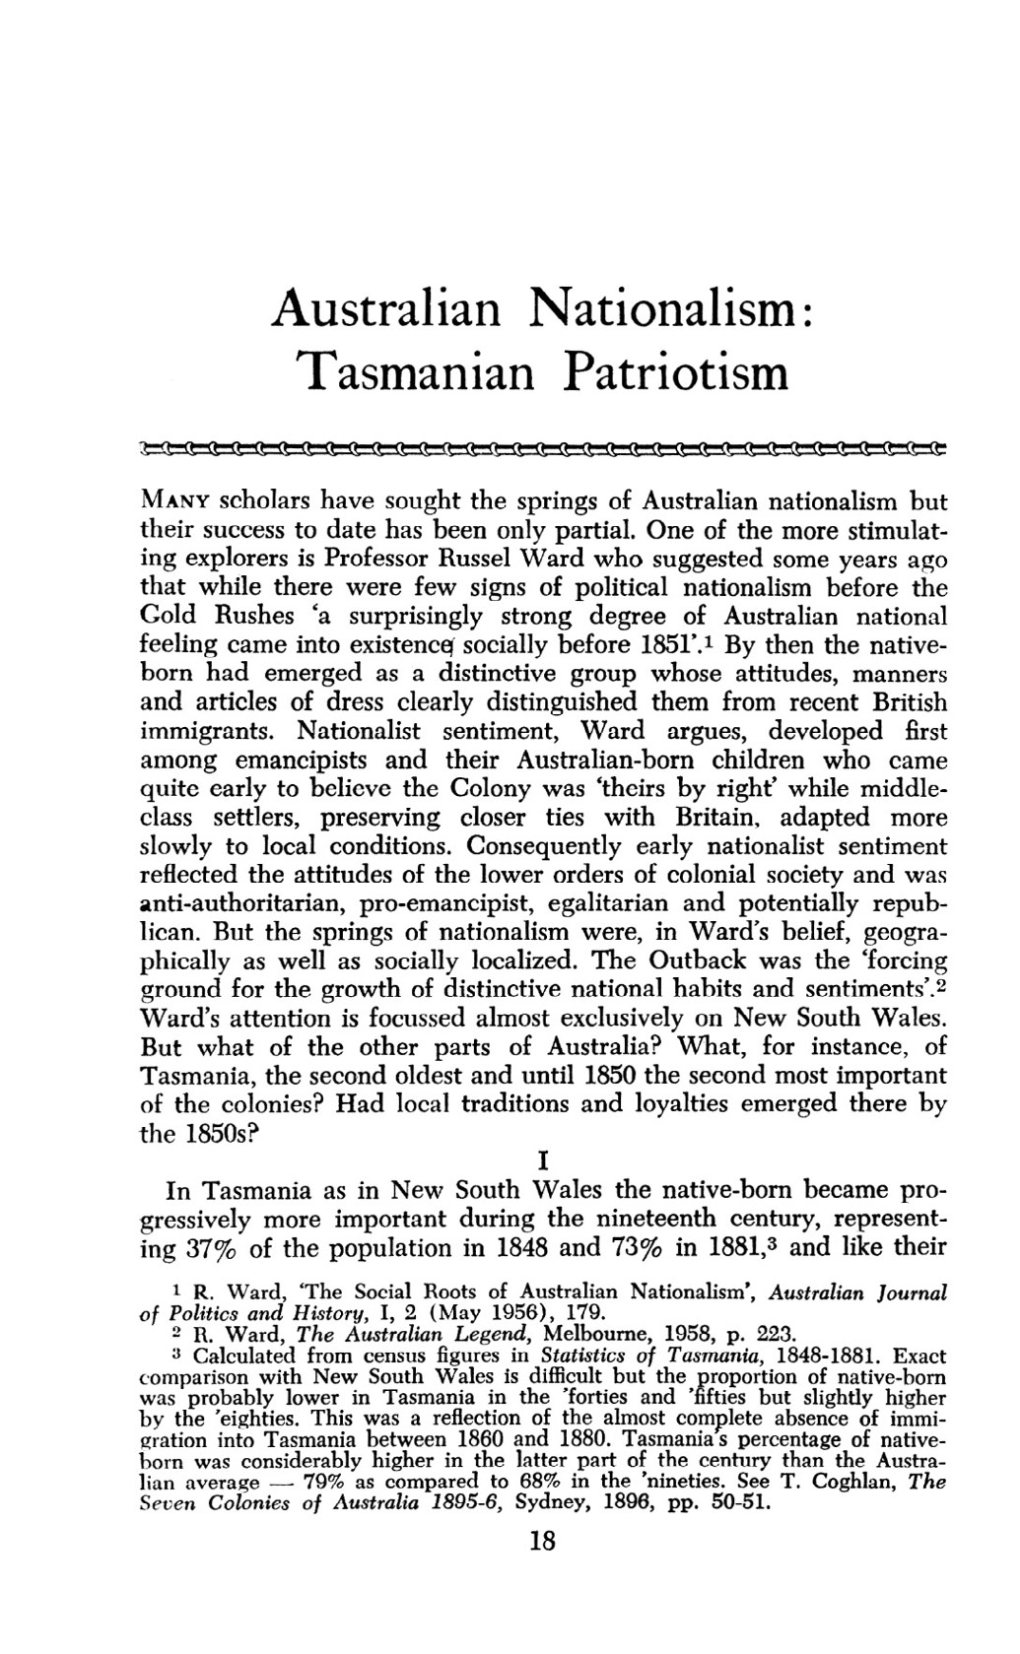 Australian Nationalism: Tasmanian Patriotism